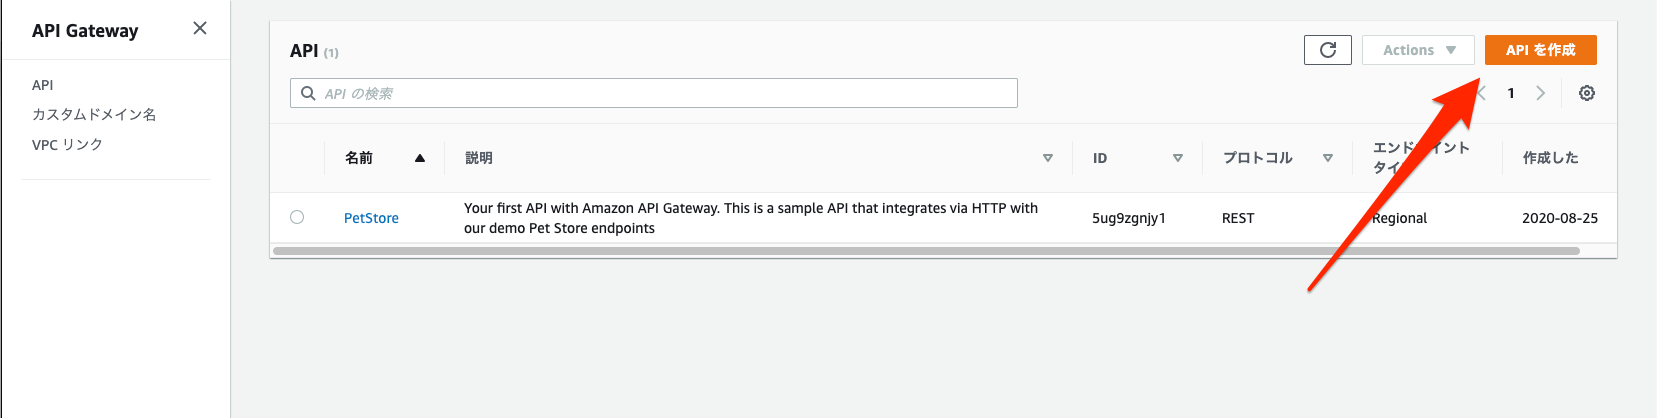 1_API_gateway.png